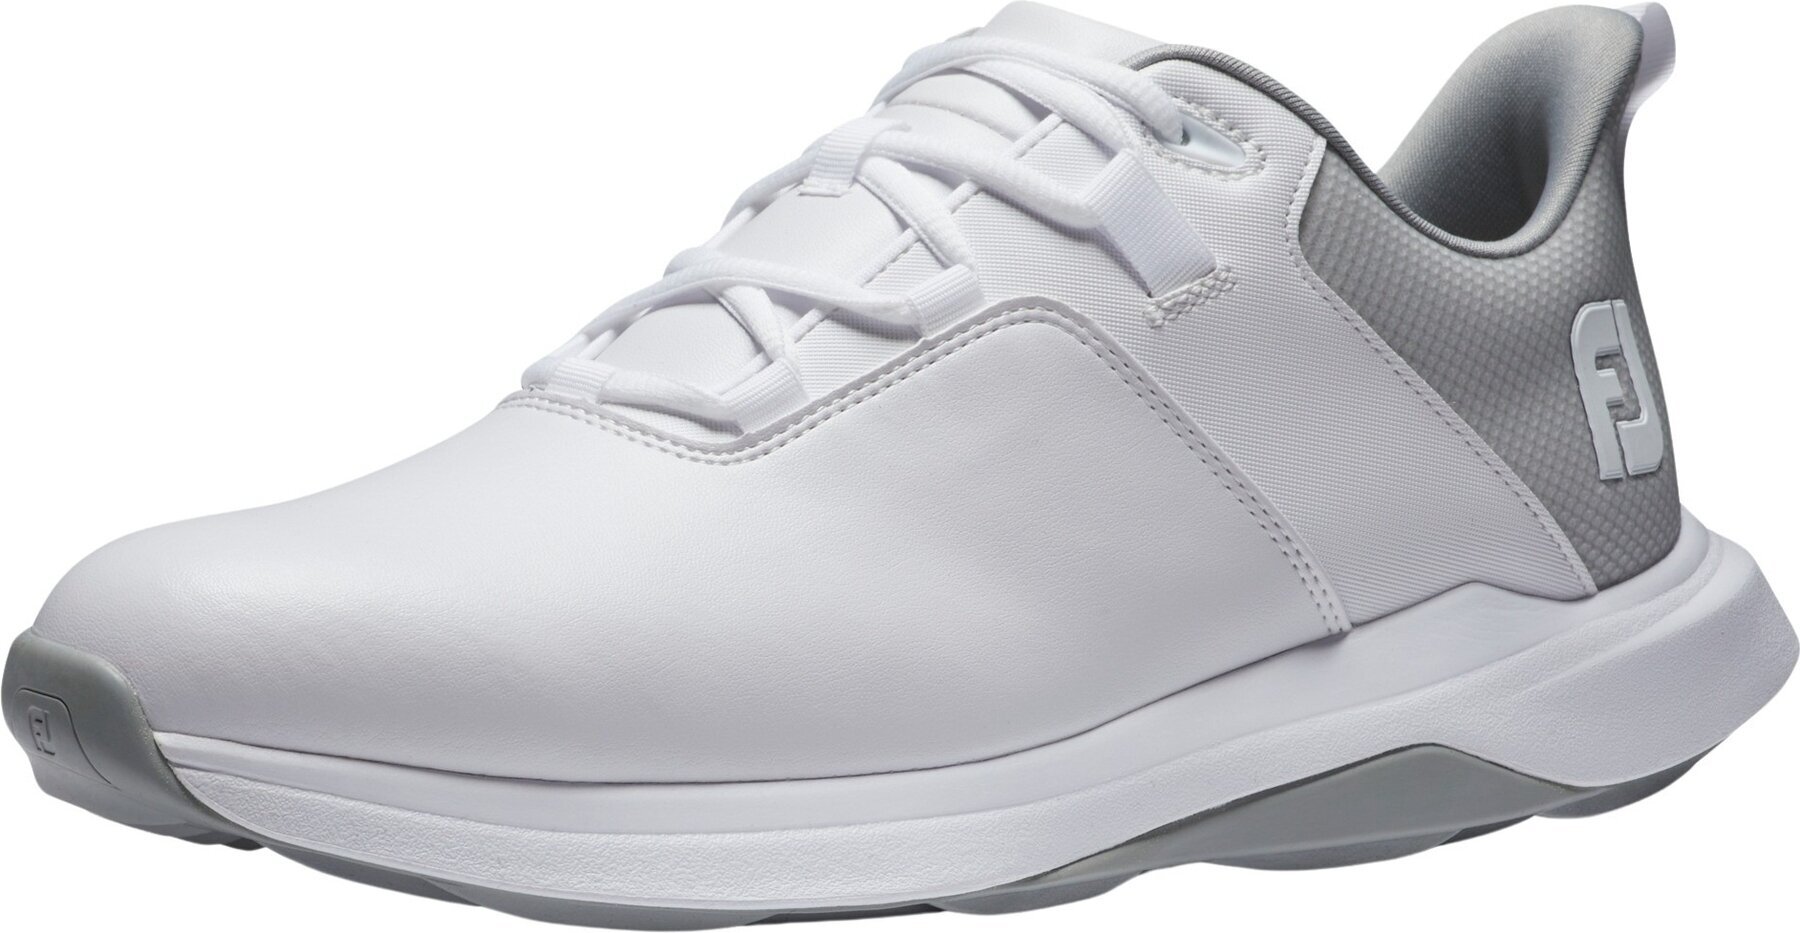 Calzado de golf para hombres Footjoy ProLite Mens Golf Shoes White/Grey 42